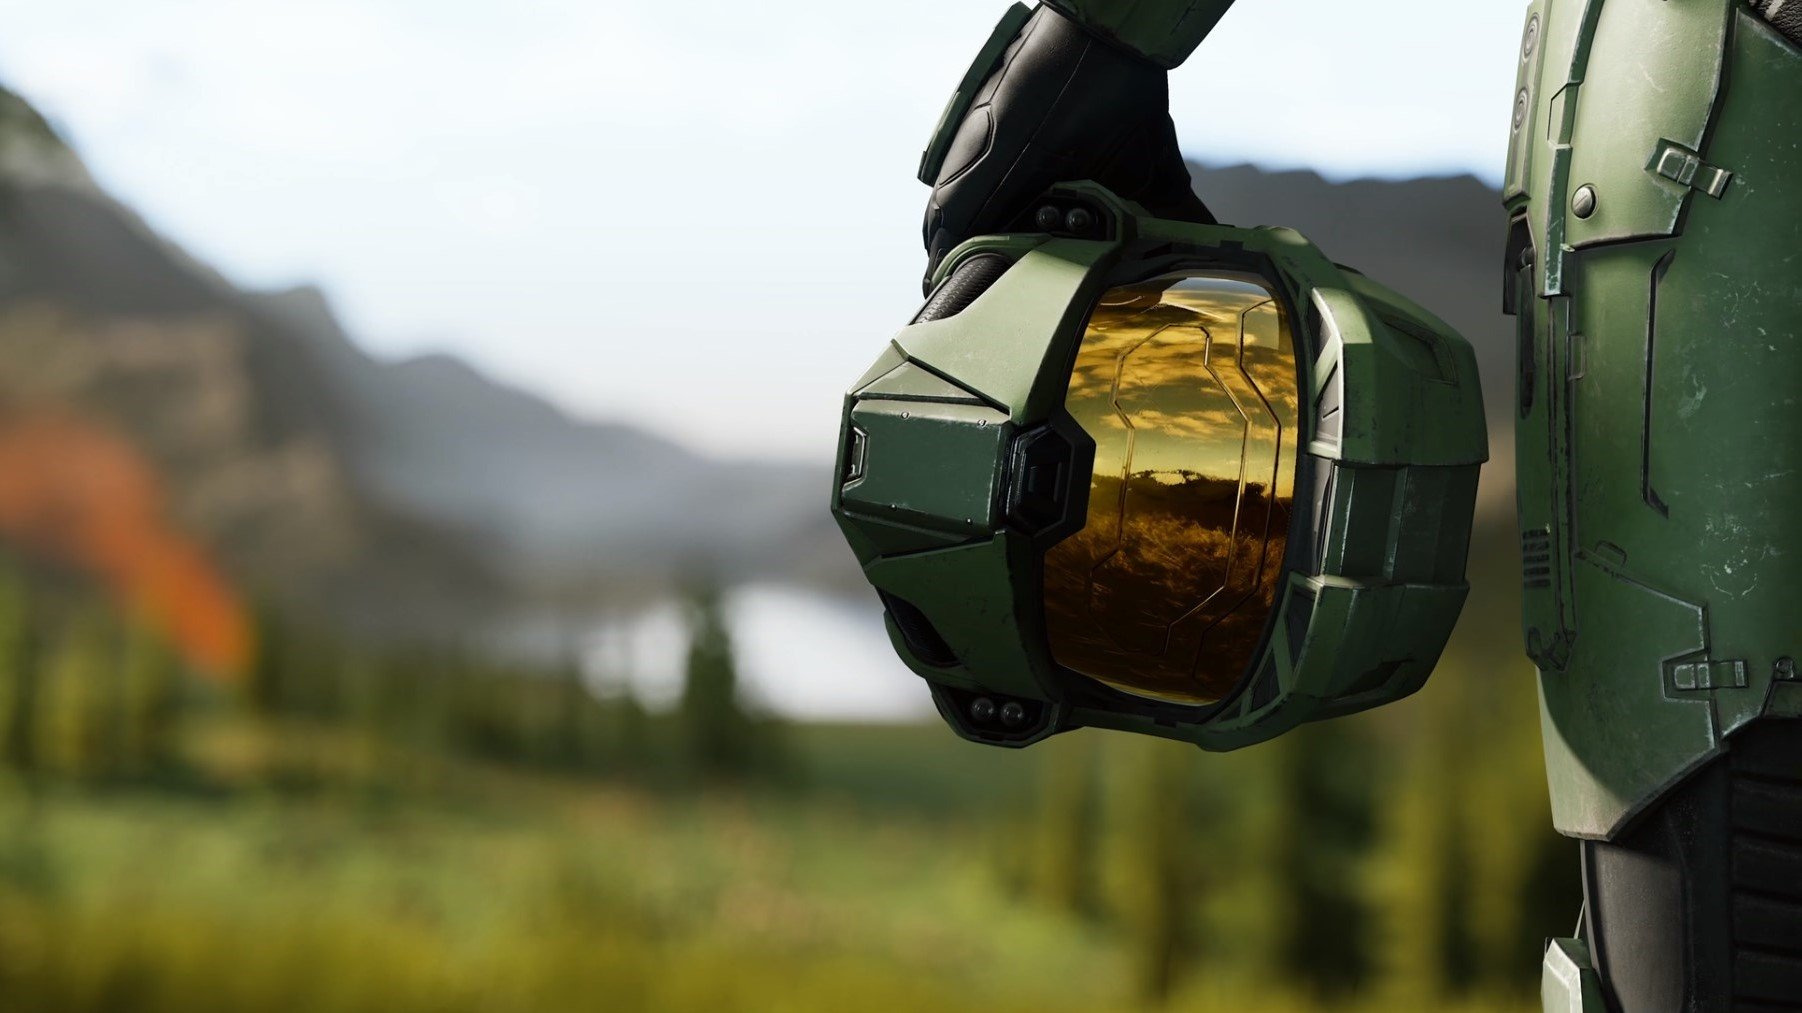 Сериал по Halo покажет ту сторону Мастера Чифа, что не представлена в играх